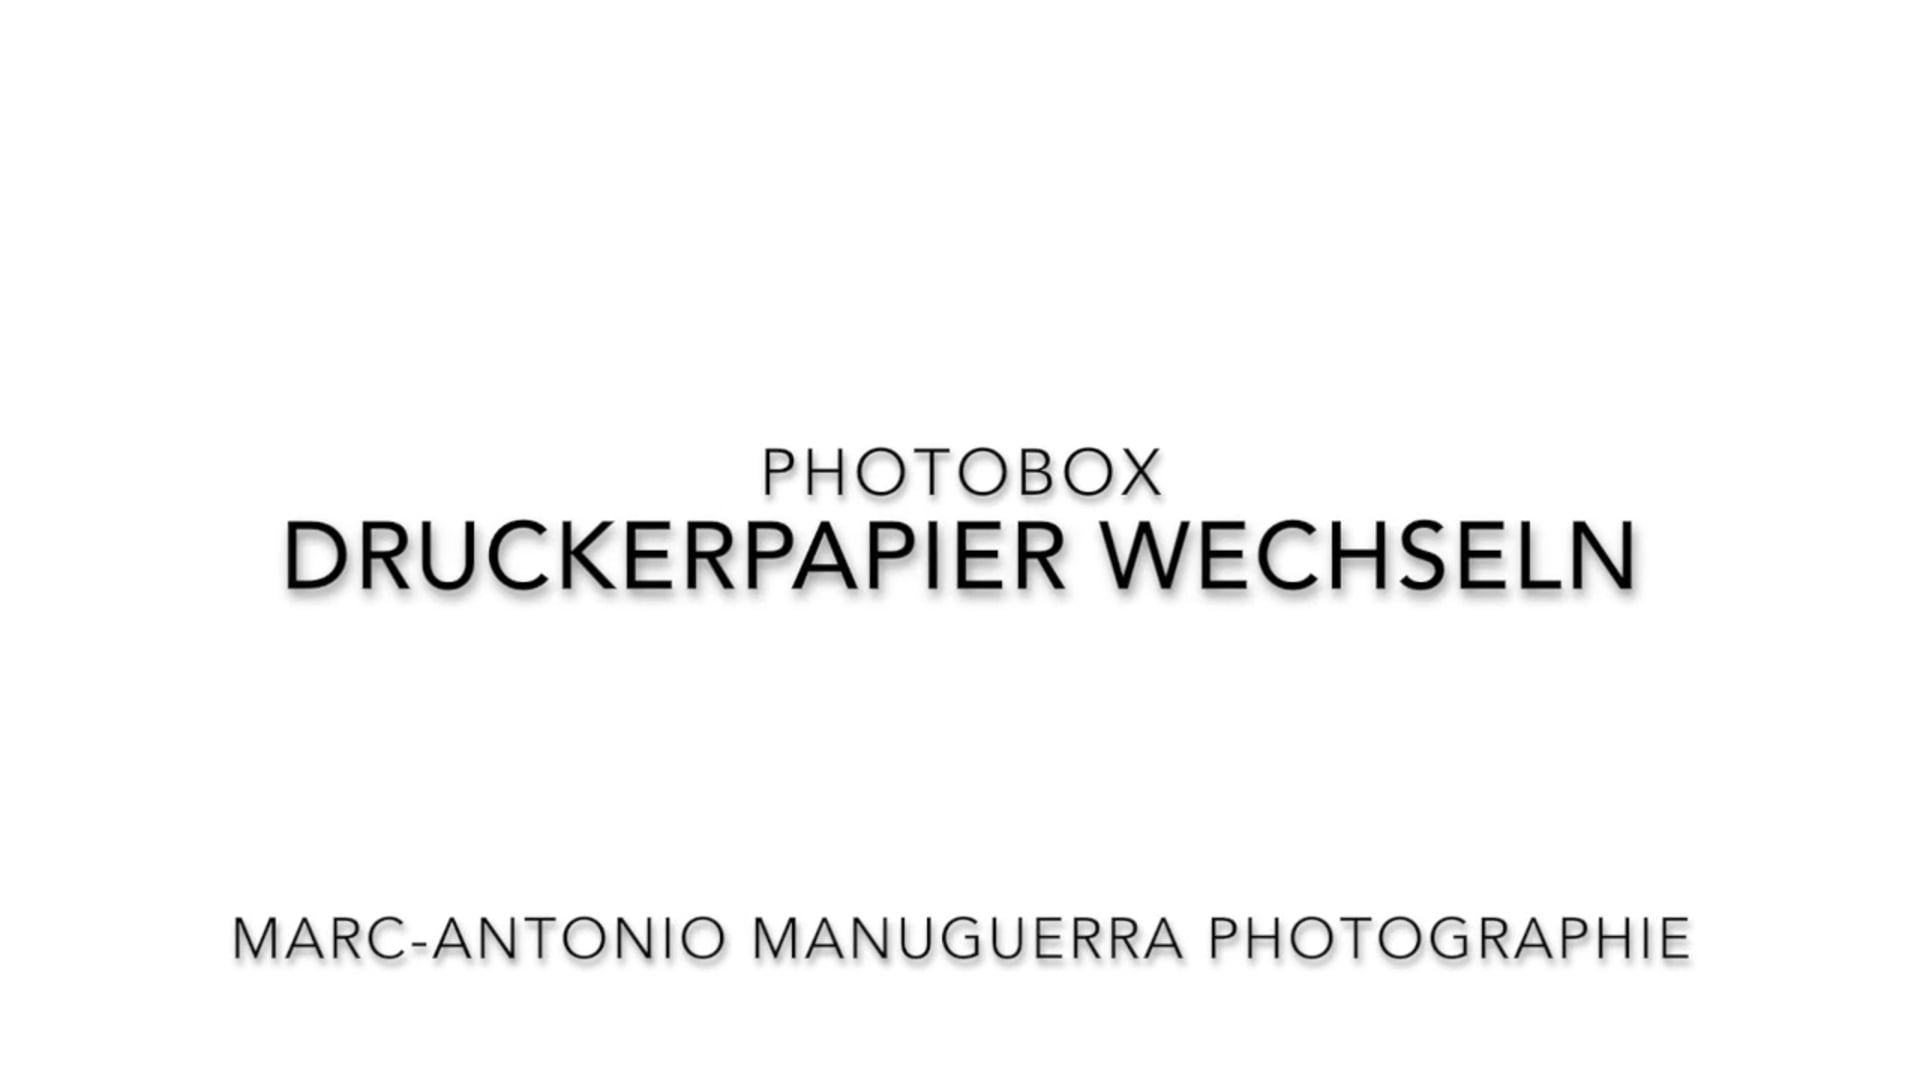 PhotoBox Druckerpapier wechseln